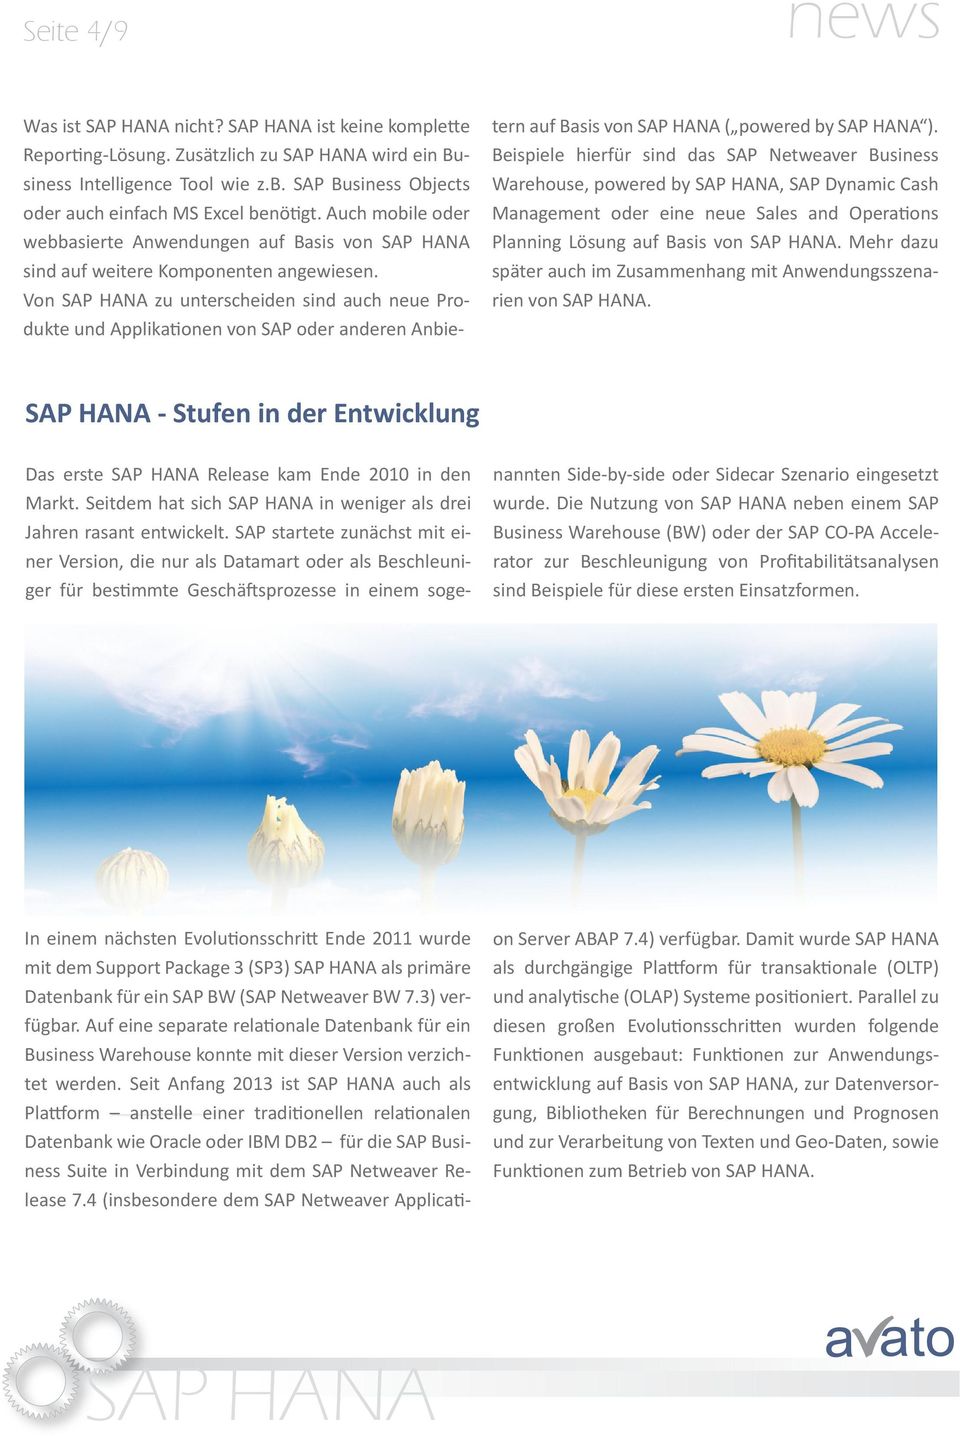 Von zu unterscheiden sind auch neue Produkte und Applikationen von SAP oder anderen Anbie - tern auf Basis von ( powered by ).